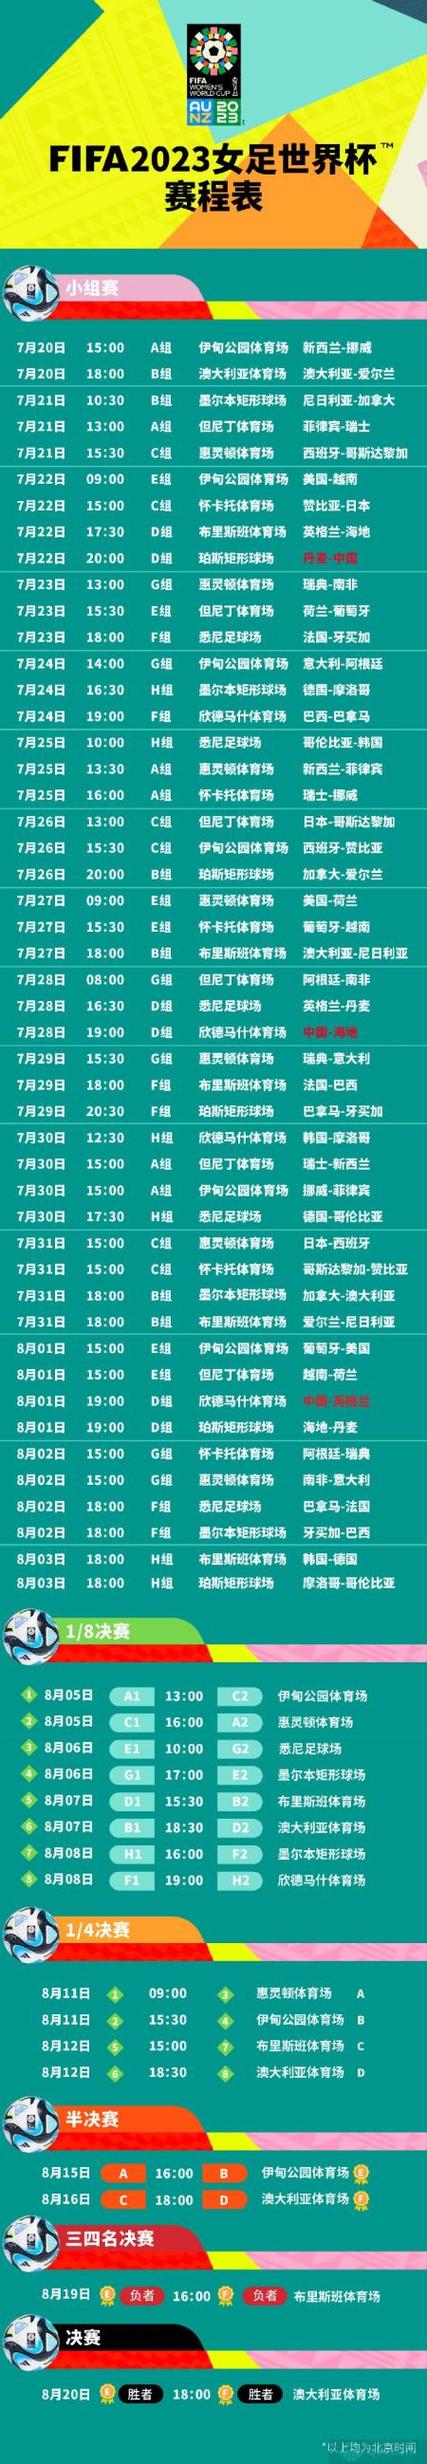 中国足球世界杯预选赛赛程时间表